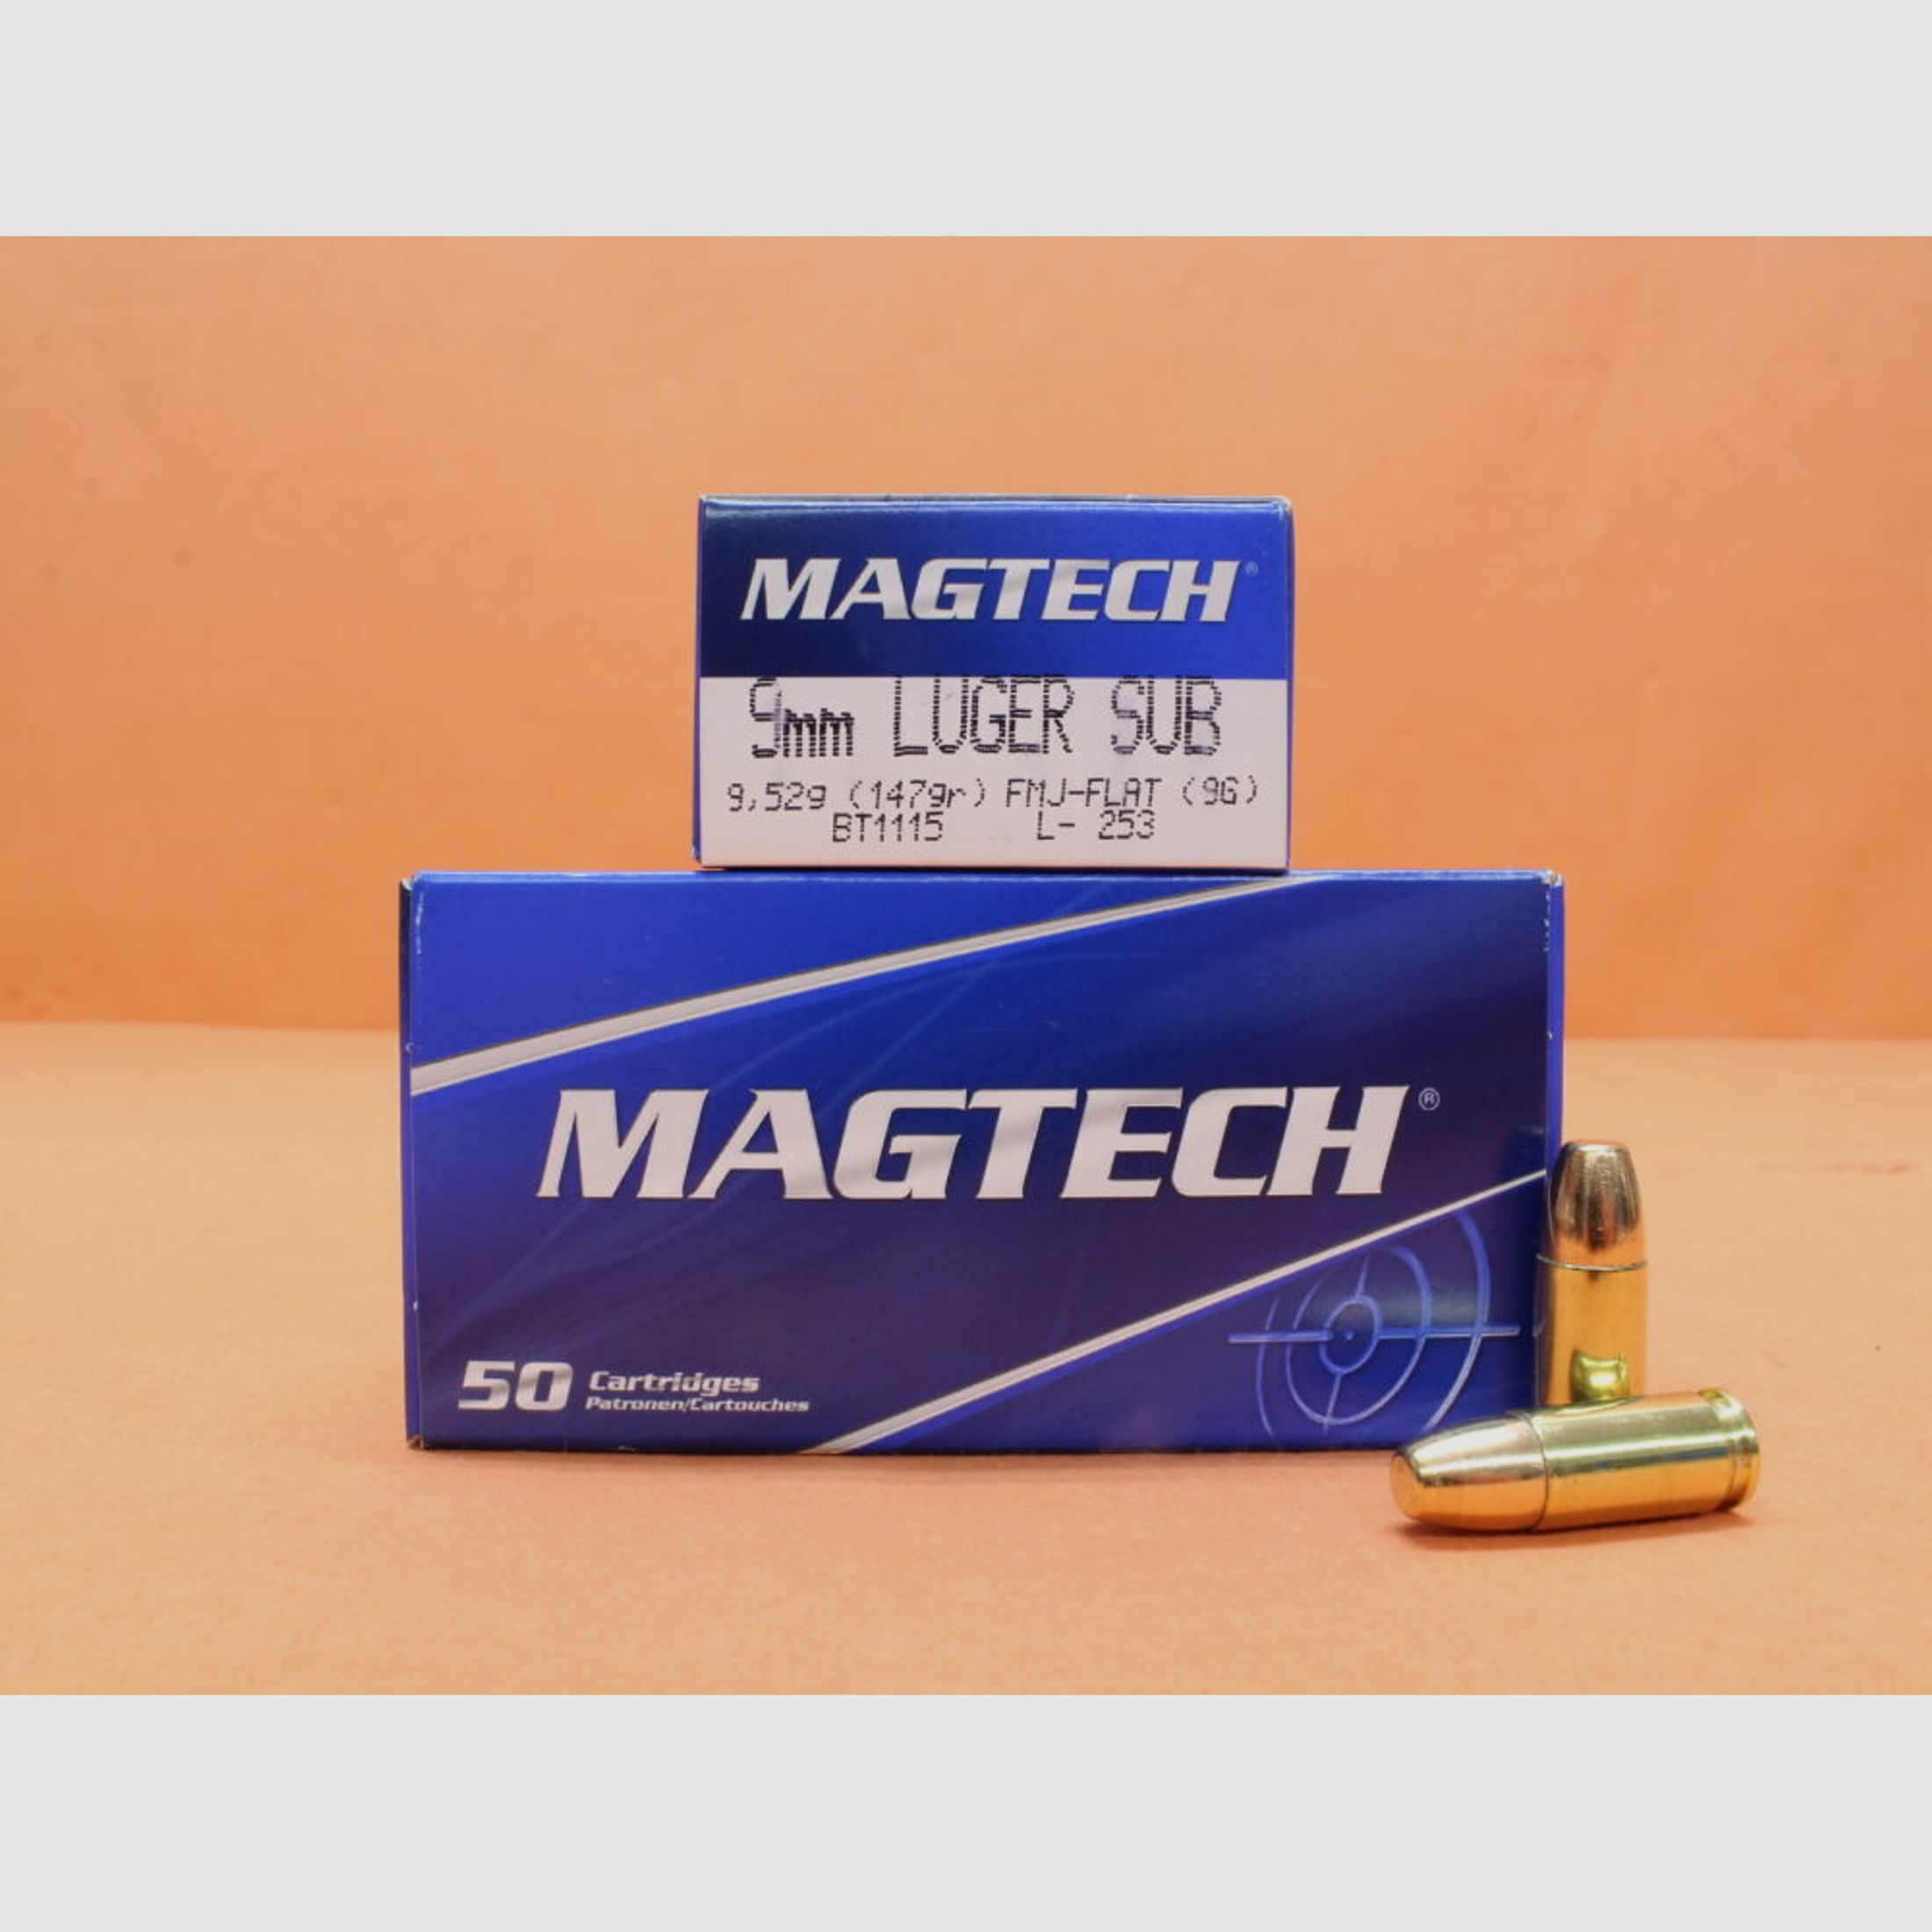 Magtech	 Patrone 9mmLuger Magtech 147grs FMJ/ FMC-FLAT (9G) VE 50 Patronen (Subsonic)/ 9,52g Vollmantel-Flachkopf (Unterschallpatrone)